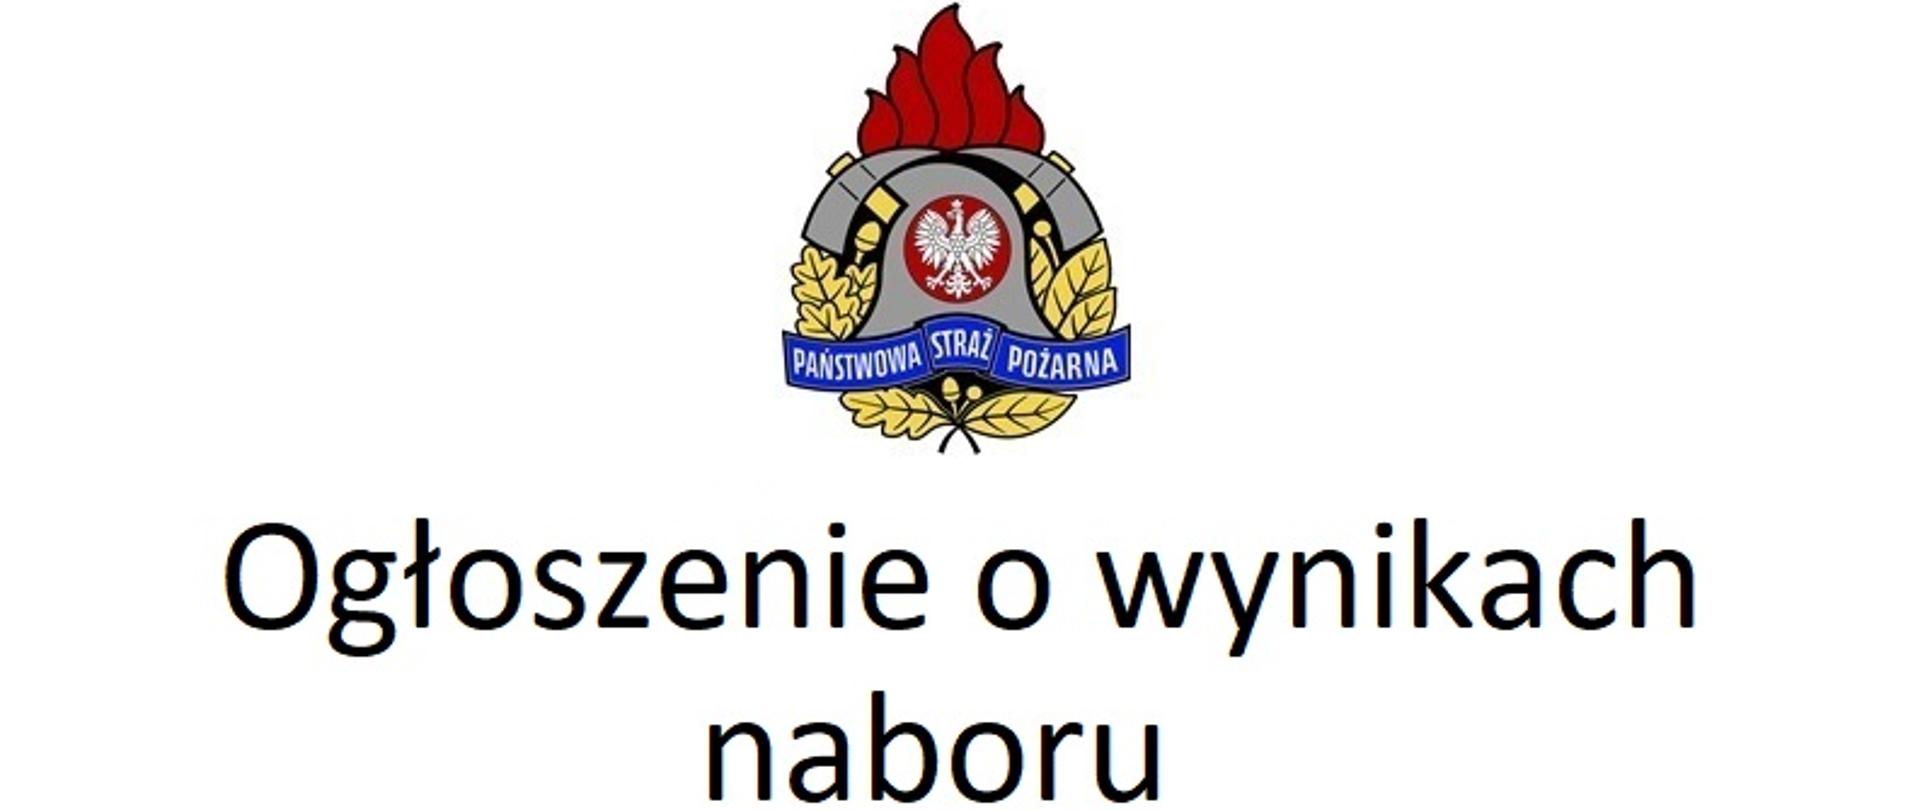 Na zdjęciu logo Państwowej Straży Pożarnej, a pod nim napis "Ogłoszenie o wynikach naboru"